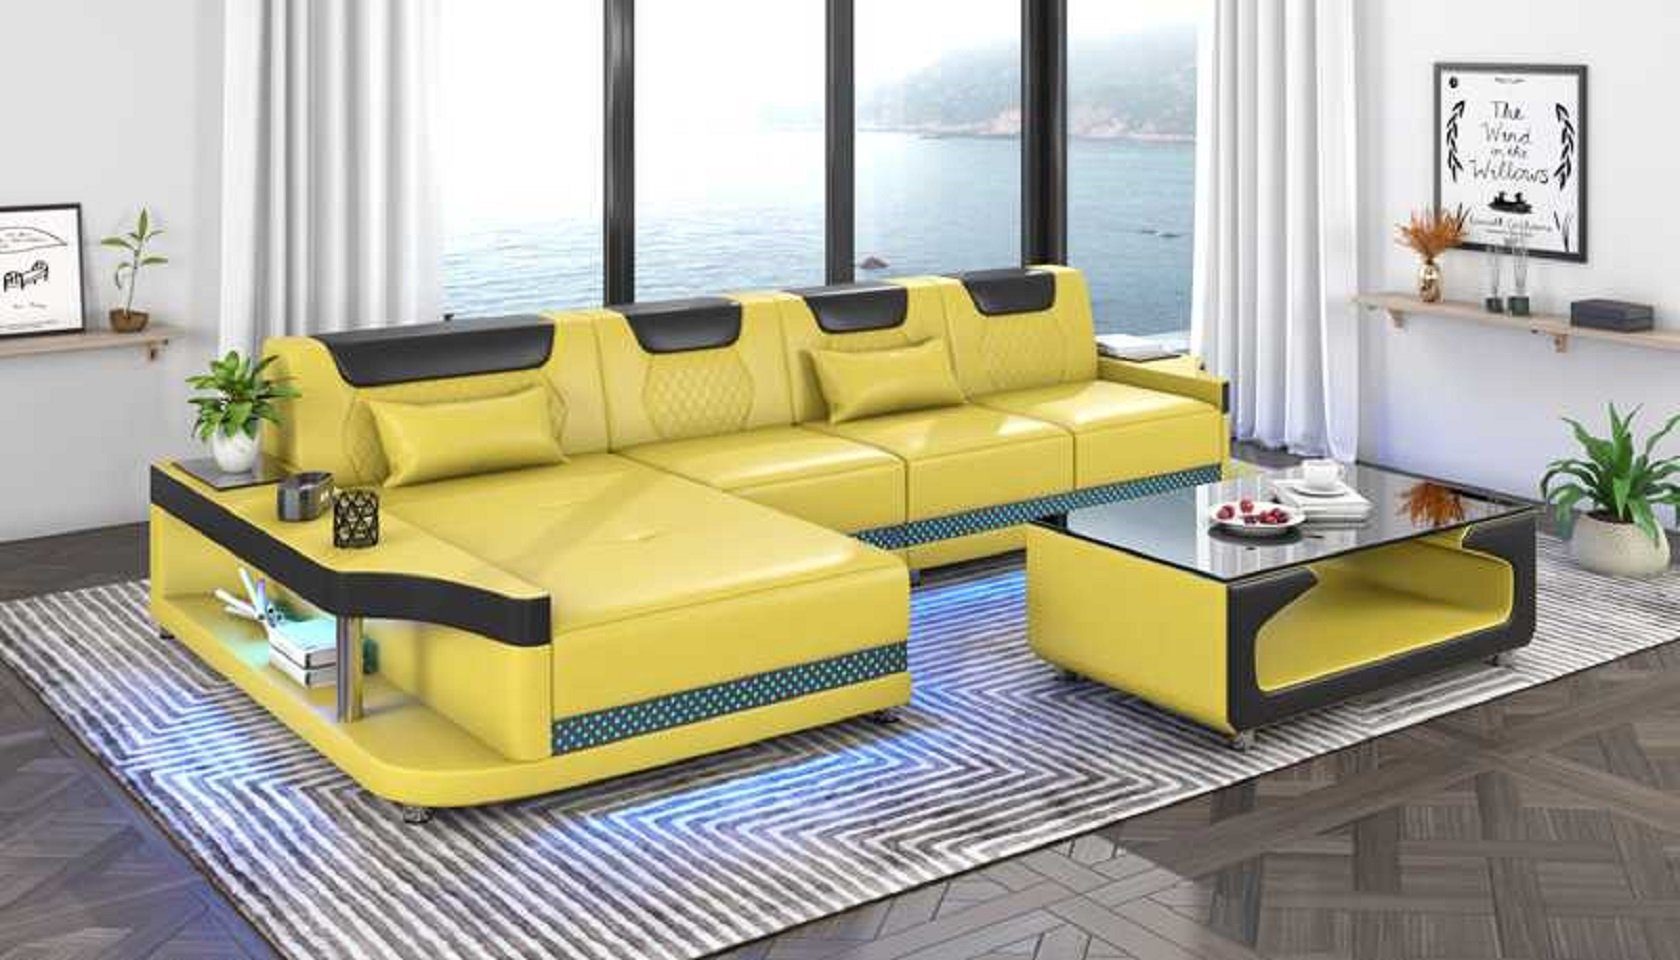 in JVmoebel Moderne Ecksofa 3 Europe Ecksofa Luxus Made Sofa Schicker Gelb Couchen, Form Couch L Teile, Grau